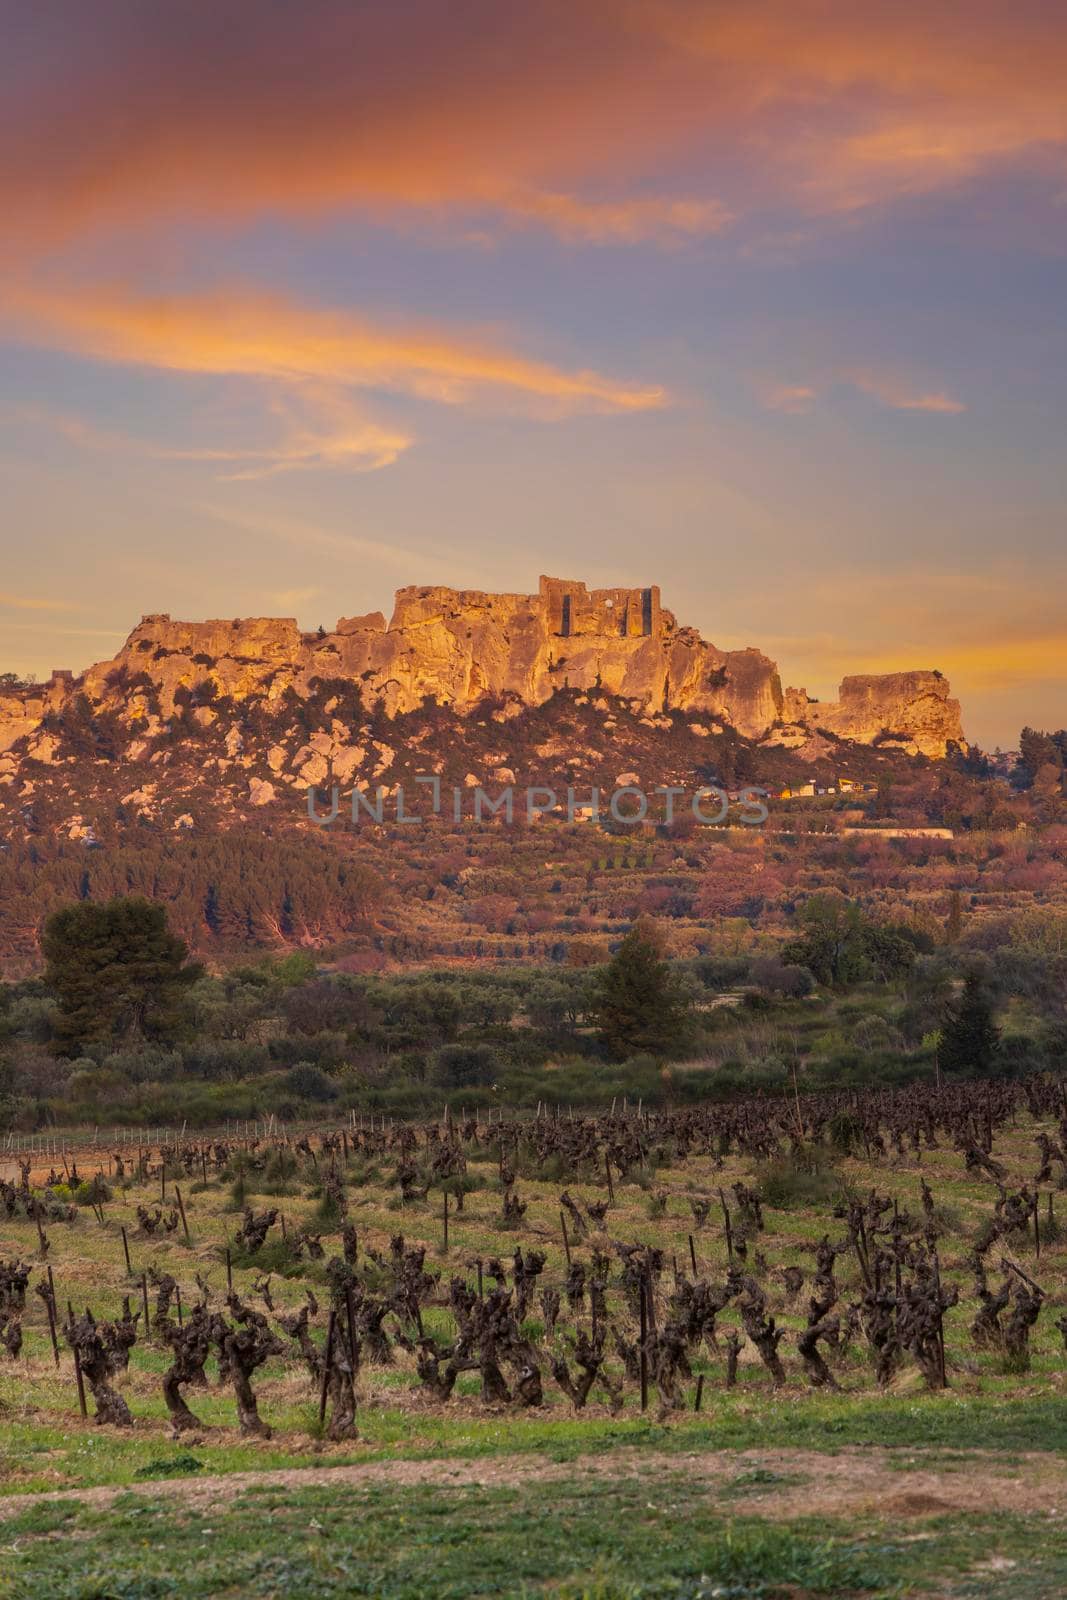 Medieval castle and village, Les Baux-de-Provence, Alpilles mountains, Provence, France by phbcz